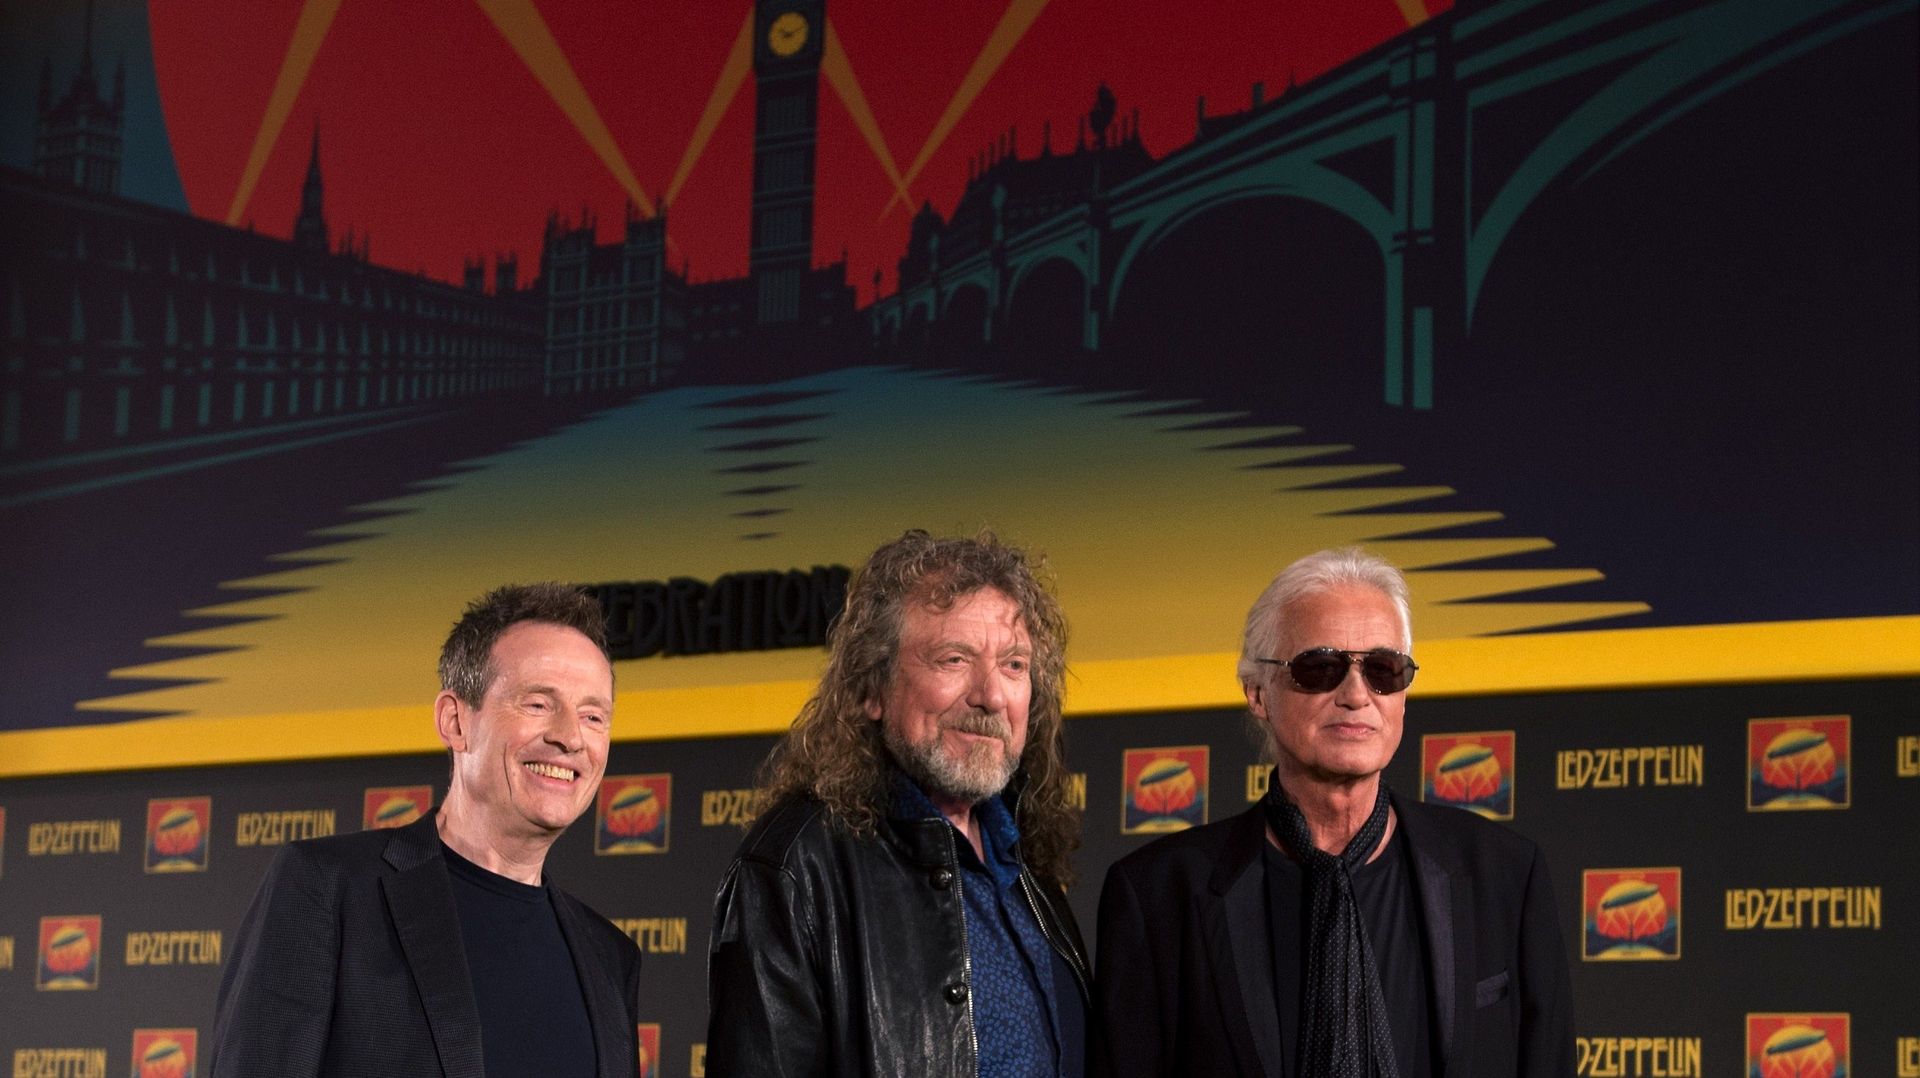 Led Zeppelin de retour? "Je ne suis pas un jukebox", tonne Robert Plant